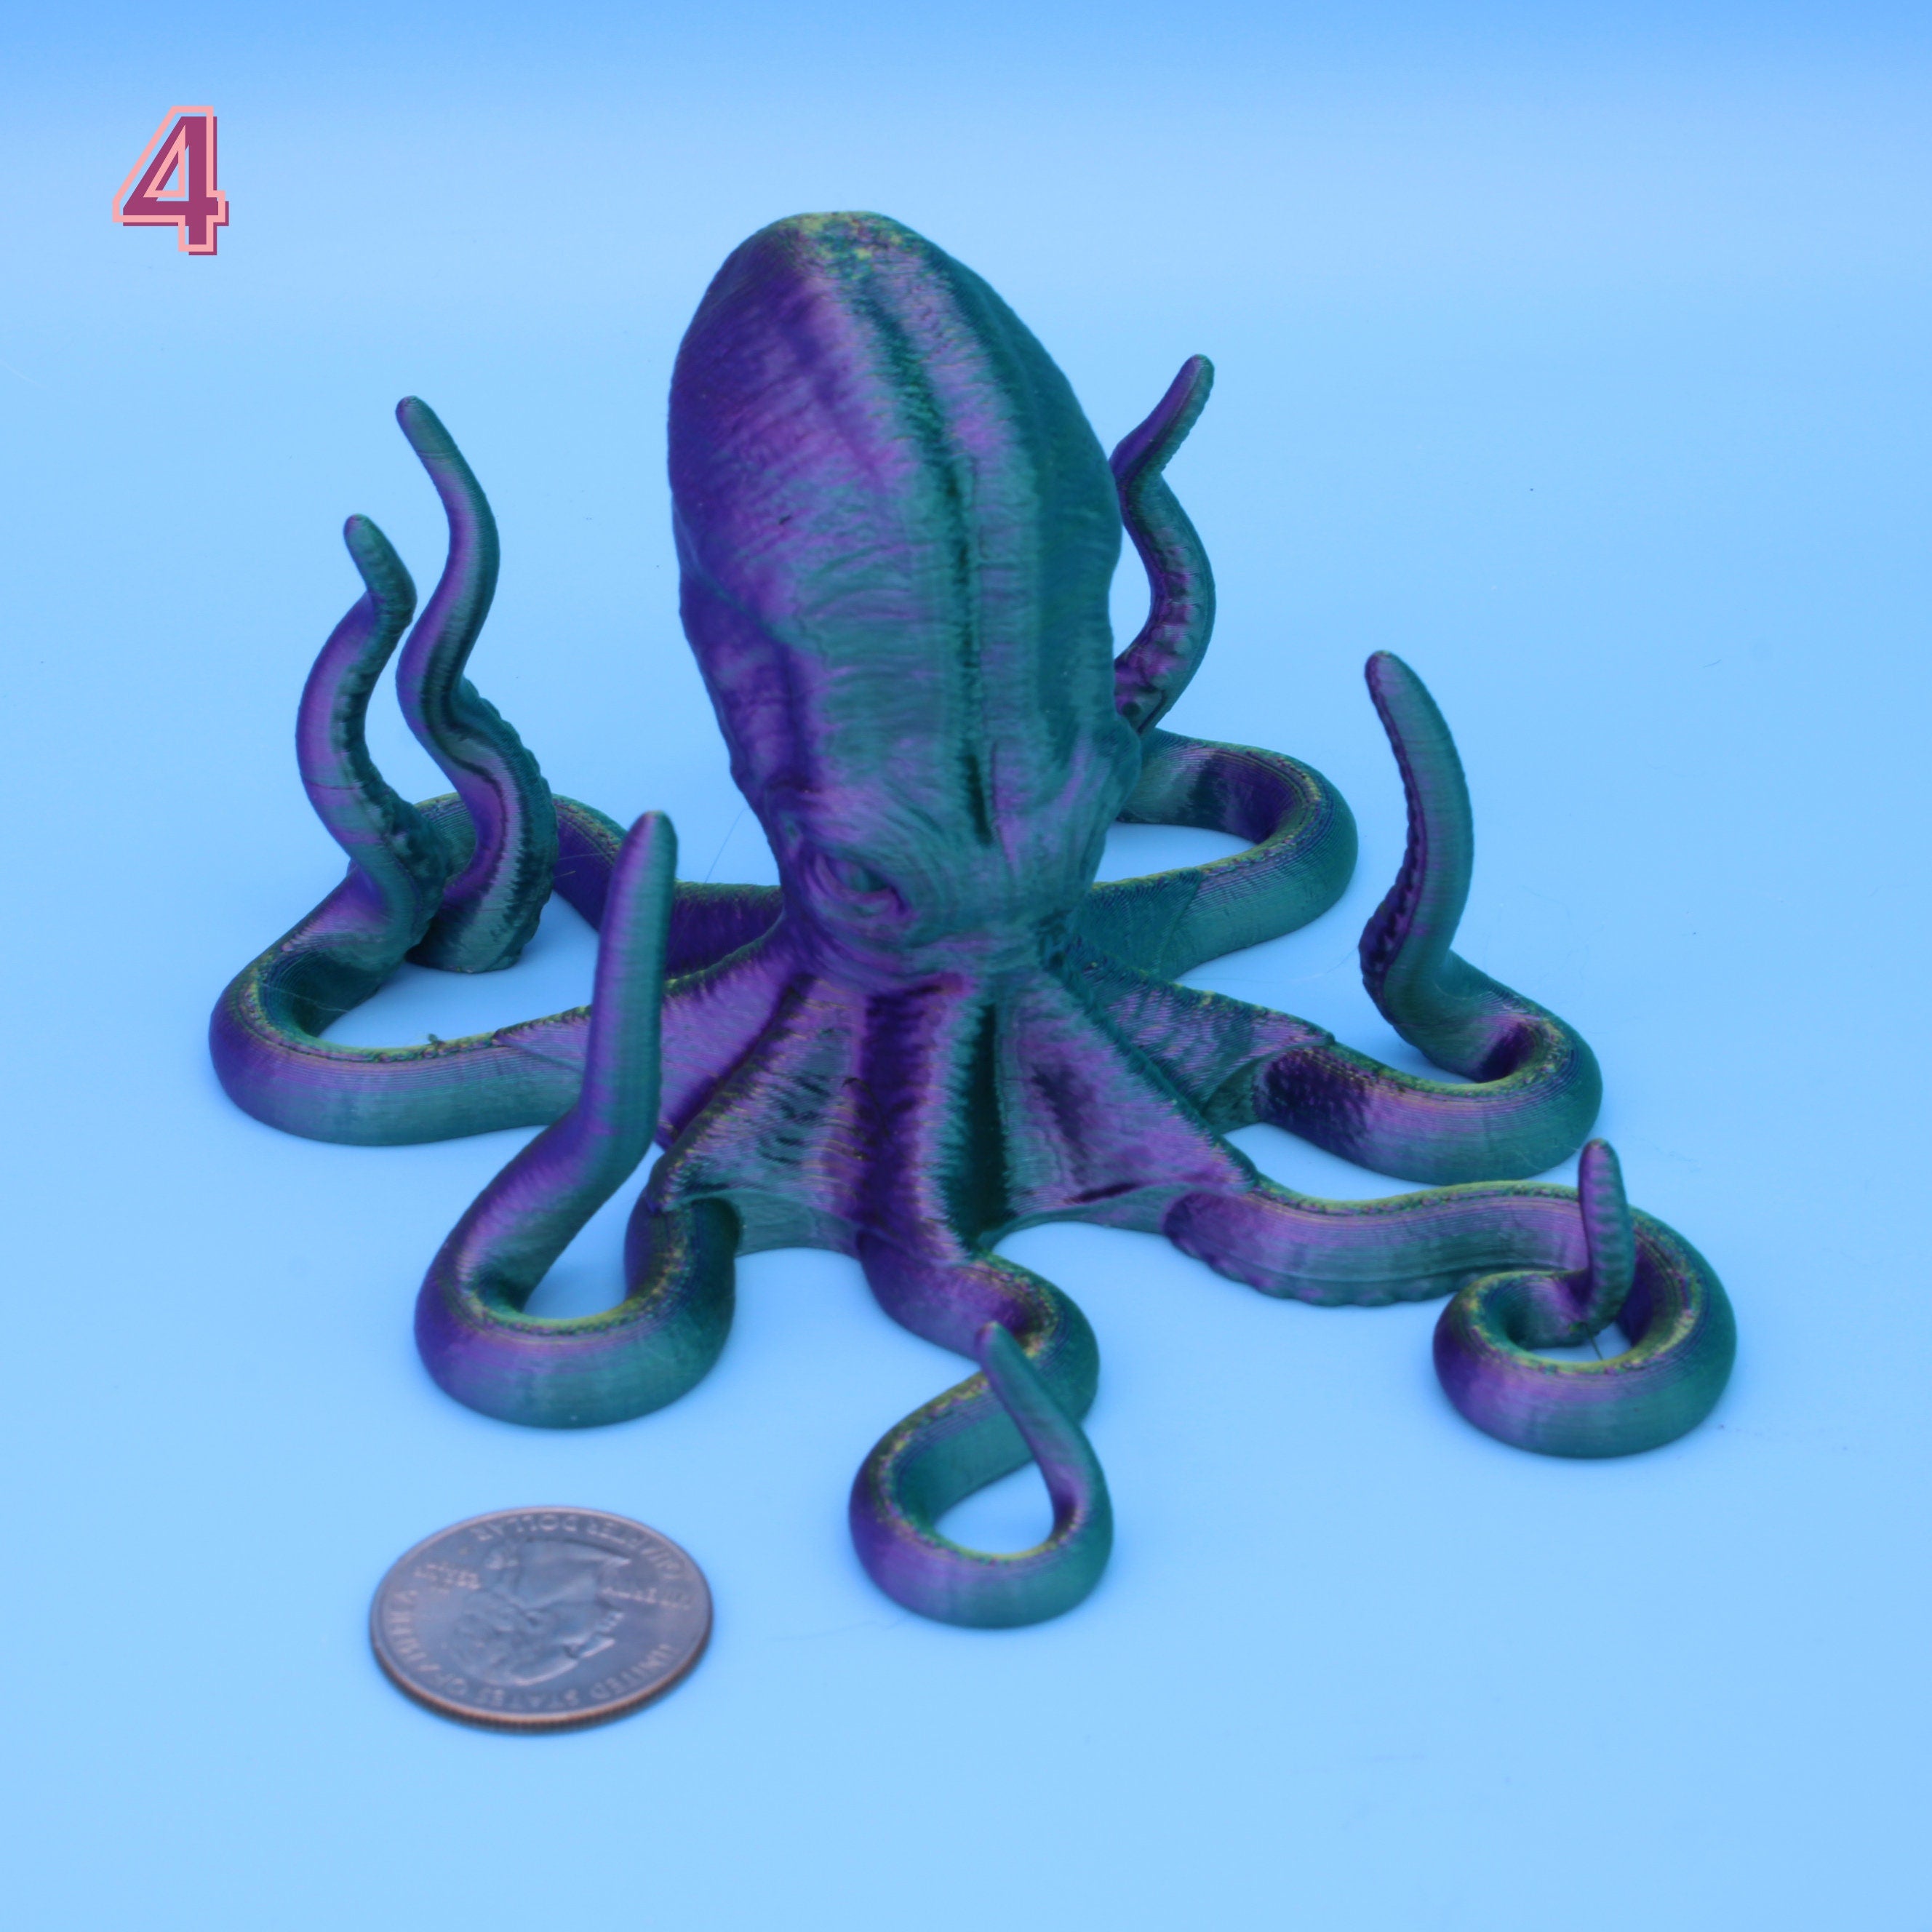 Octopus Art / Phone / Tablet - 3D Printed